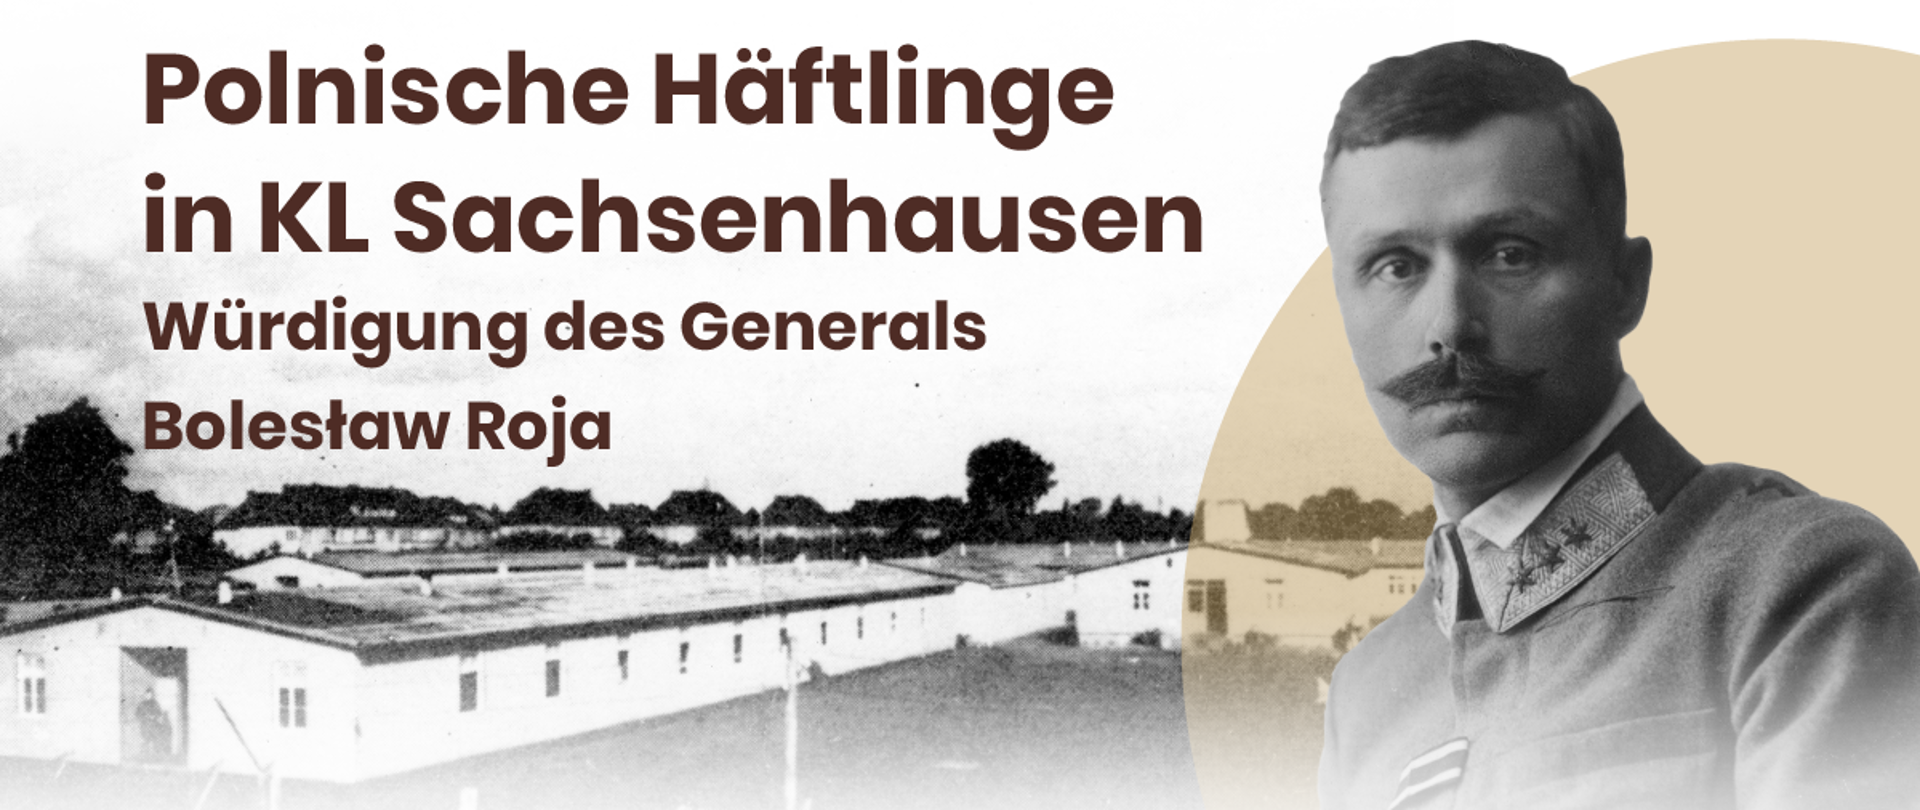 16. Juni 2021 - Wissenschaftskonferenz in KL Sachsenhausen